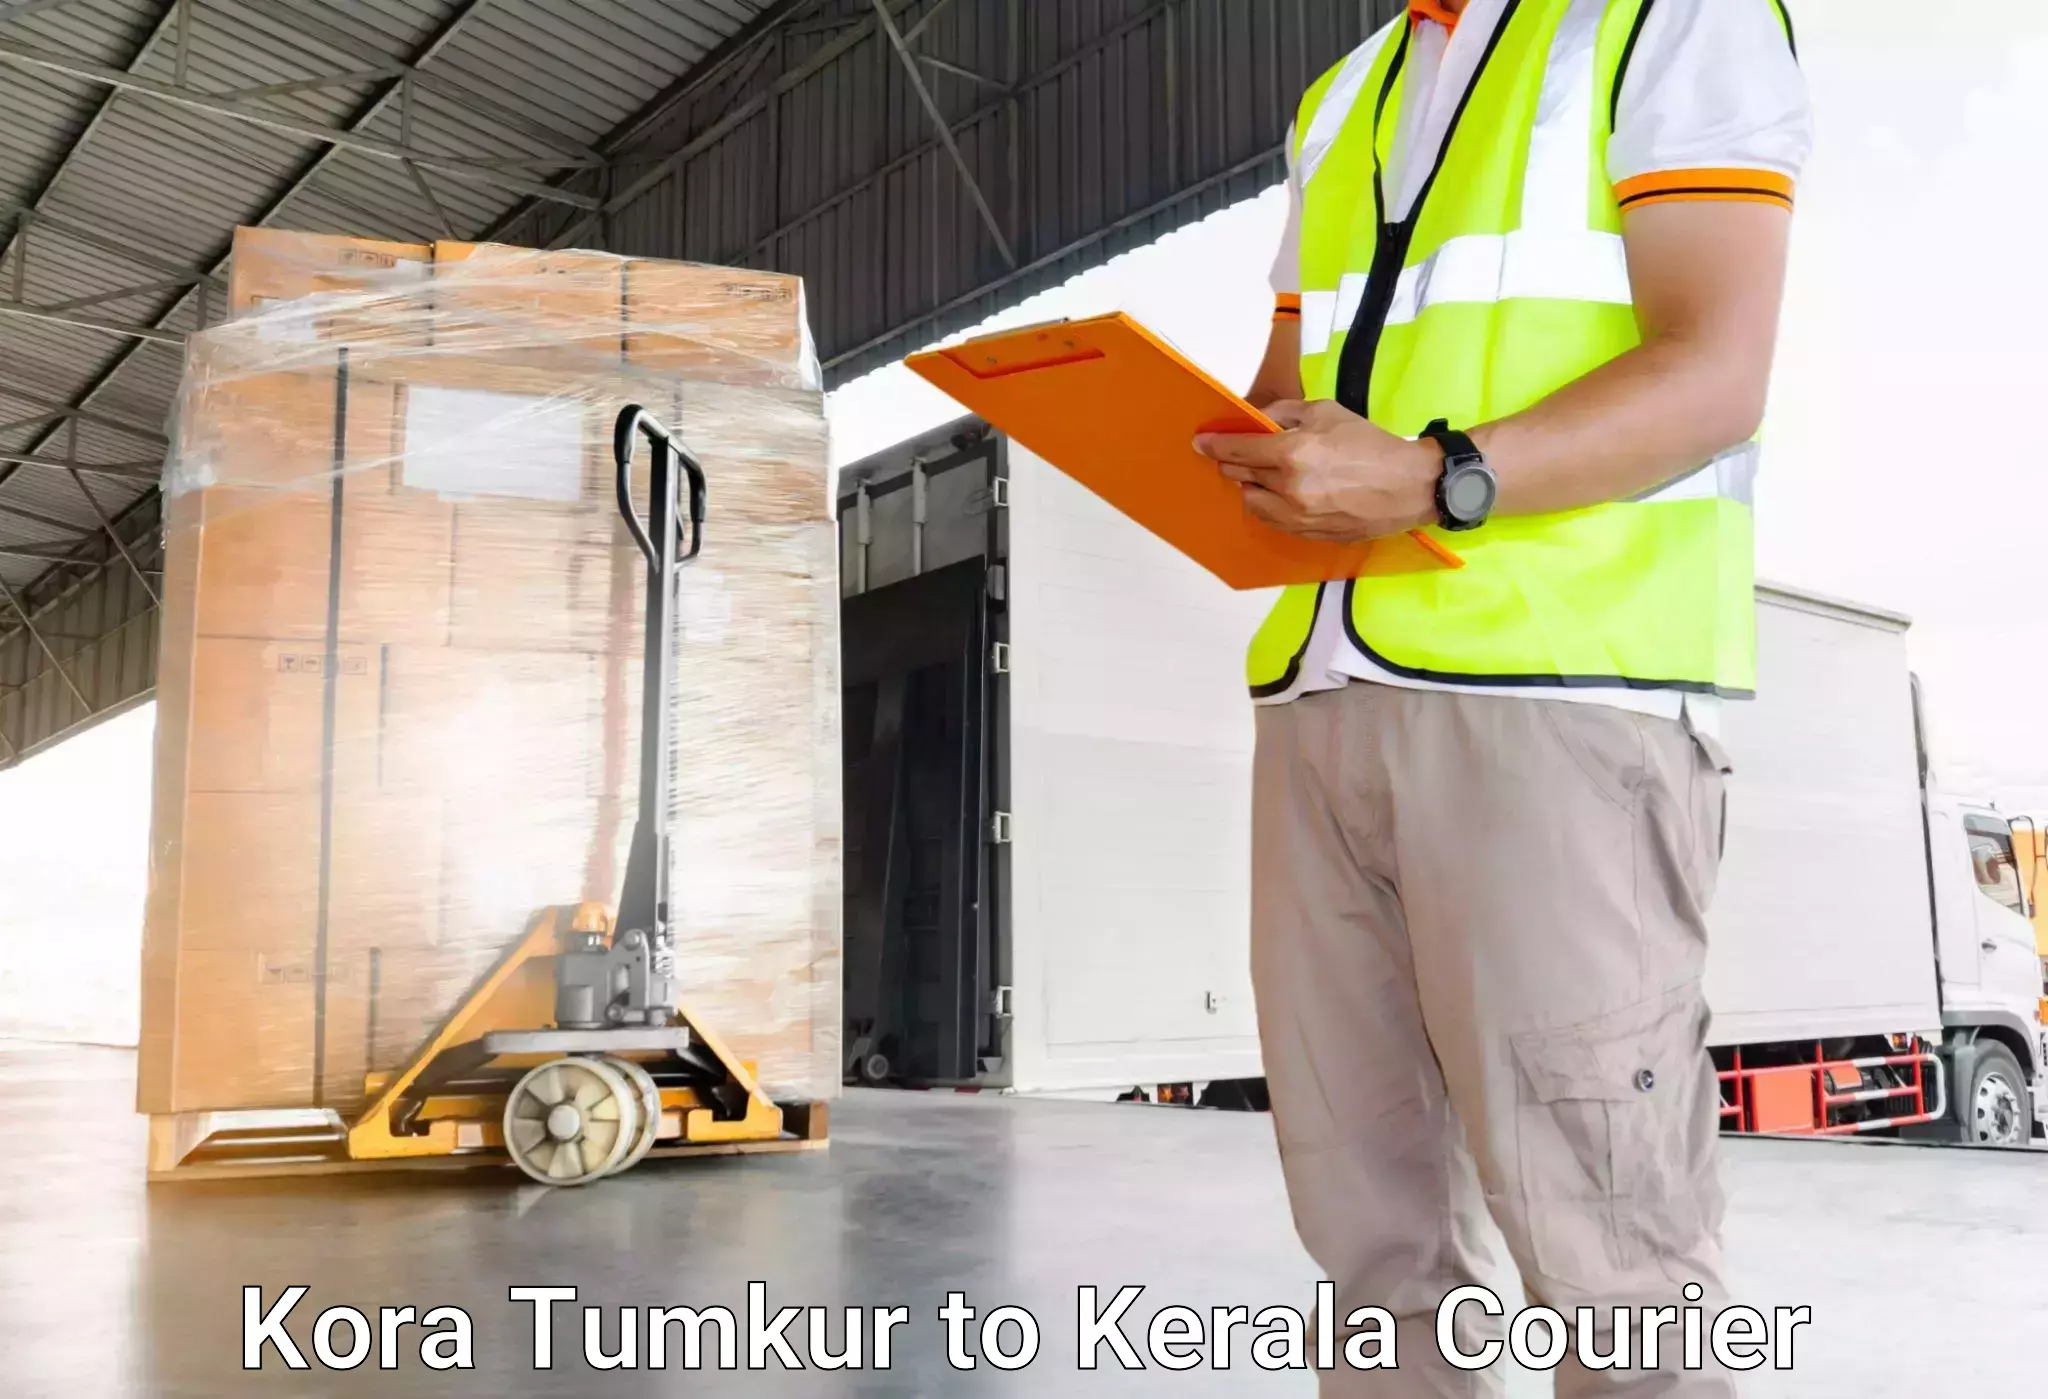 Luggage dispatch service Kora Tumkur to Kuthiathode